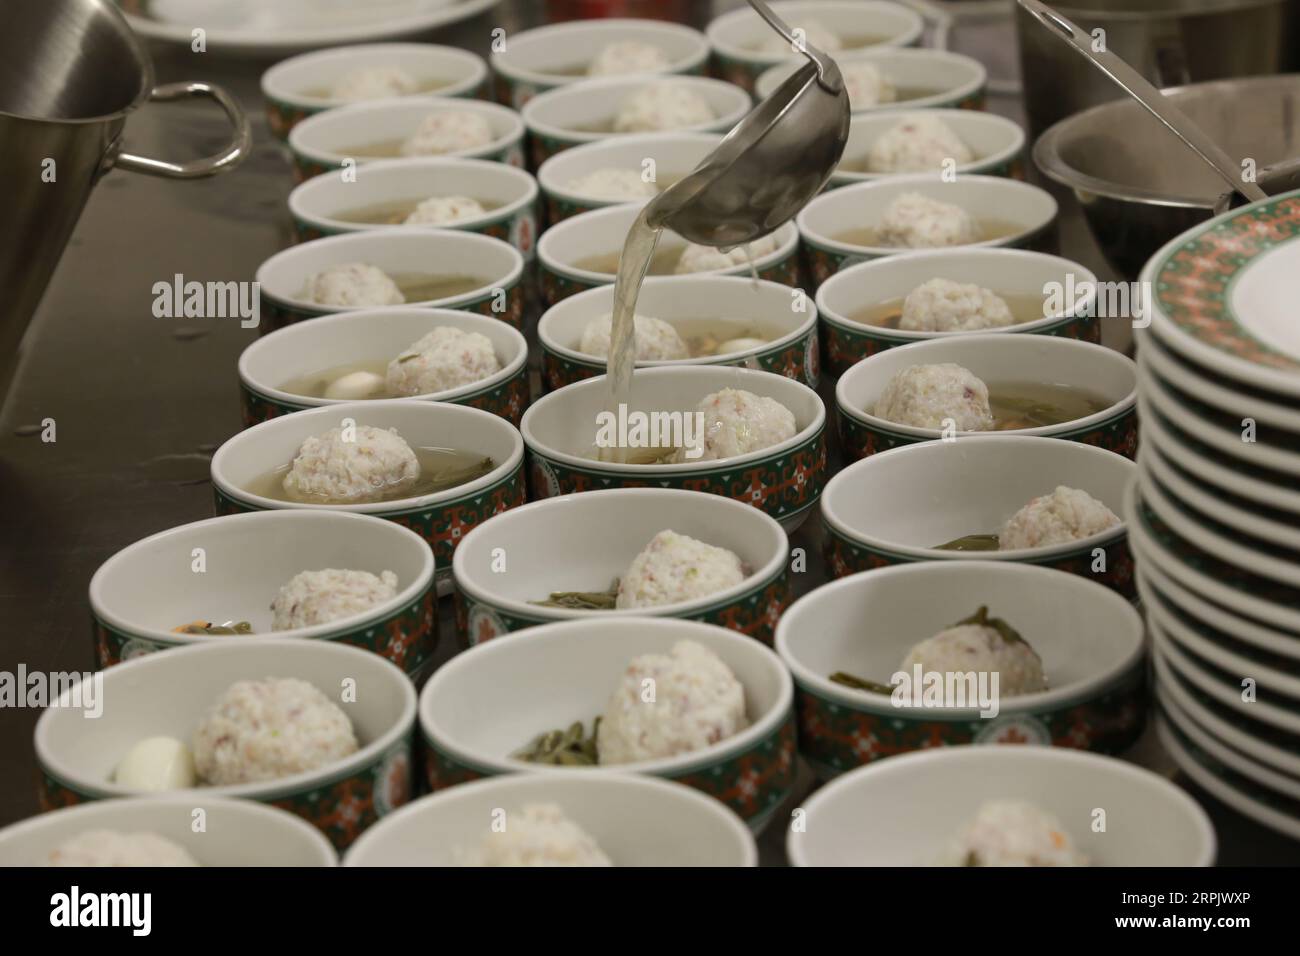 191221 -- BELGRAD, 21. Dezember 2019 -- Foto aufgenommen am 20. Dezember 2019 zeigt die Fischkugelsuppe, die von einem chinesischen Studenten hergestellt wurde, der in kulinarischer Kunst studiert hat, während einer traditionellen chinesischen Kochshow in Belgrad, der Hauptstadt Serbiens. Am Freitag fand in Belgrad eine traditionelle chinesische Kochshow statt, bei der 10 Studenten des Tourism College of Zhejiang, die sich mit kulinarischen Künsten beschäftigen, während dieser Aktivität für Besucher kochen. SERBIEN-BELGRAD-CHINA-TRADITIONELLE KÜCHE-SHOW SHIXZHONGYU PUBLICATIONXNOTXINXCHN Stockfoto